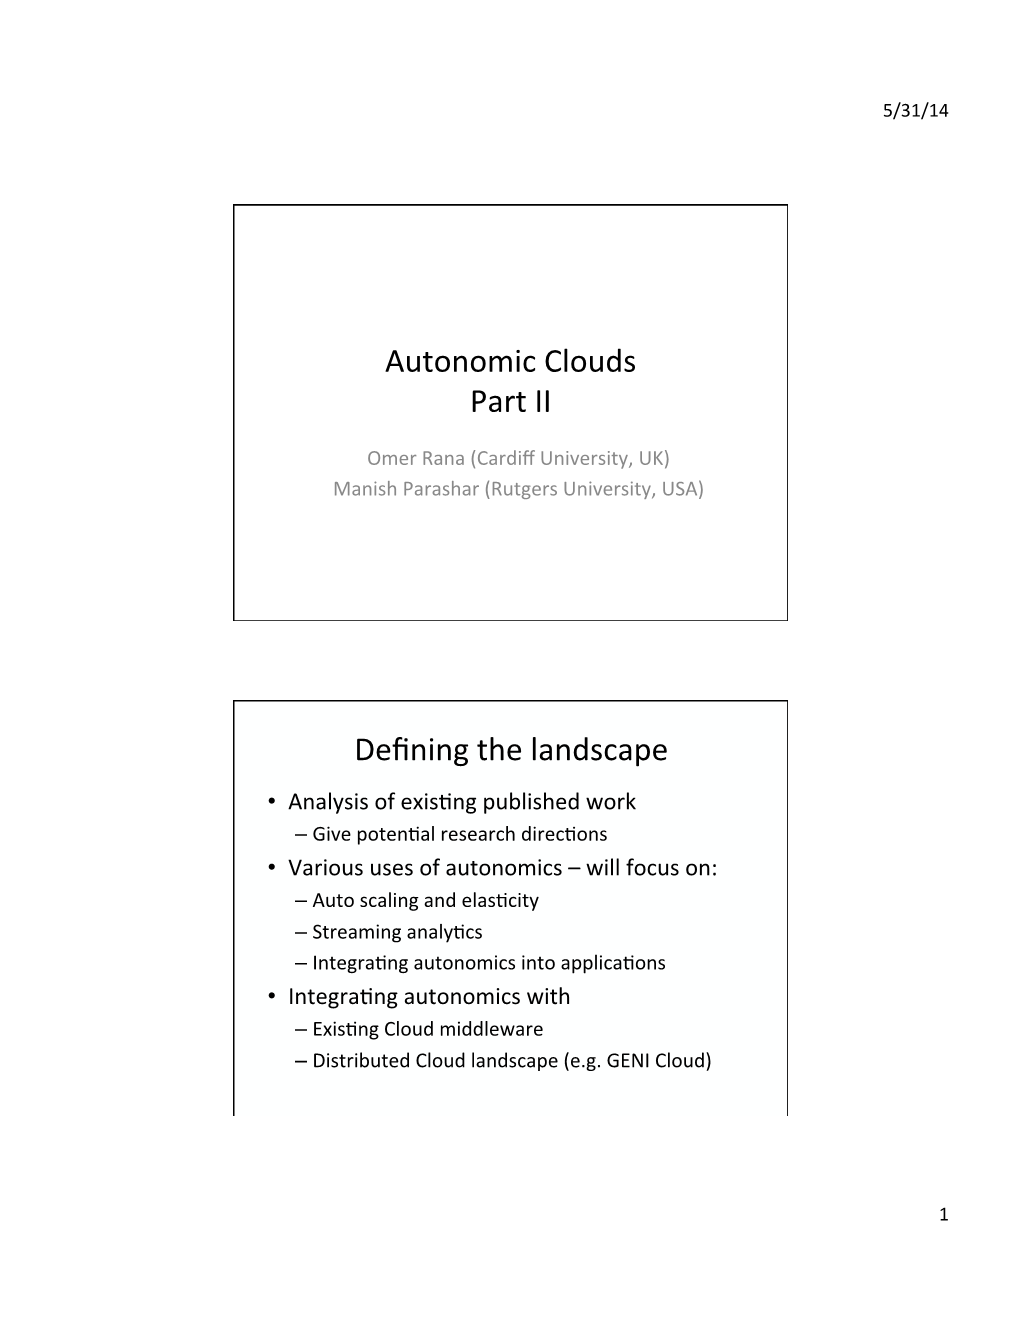 Autonomic Clouds Part II Defining the Landscape